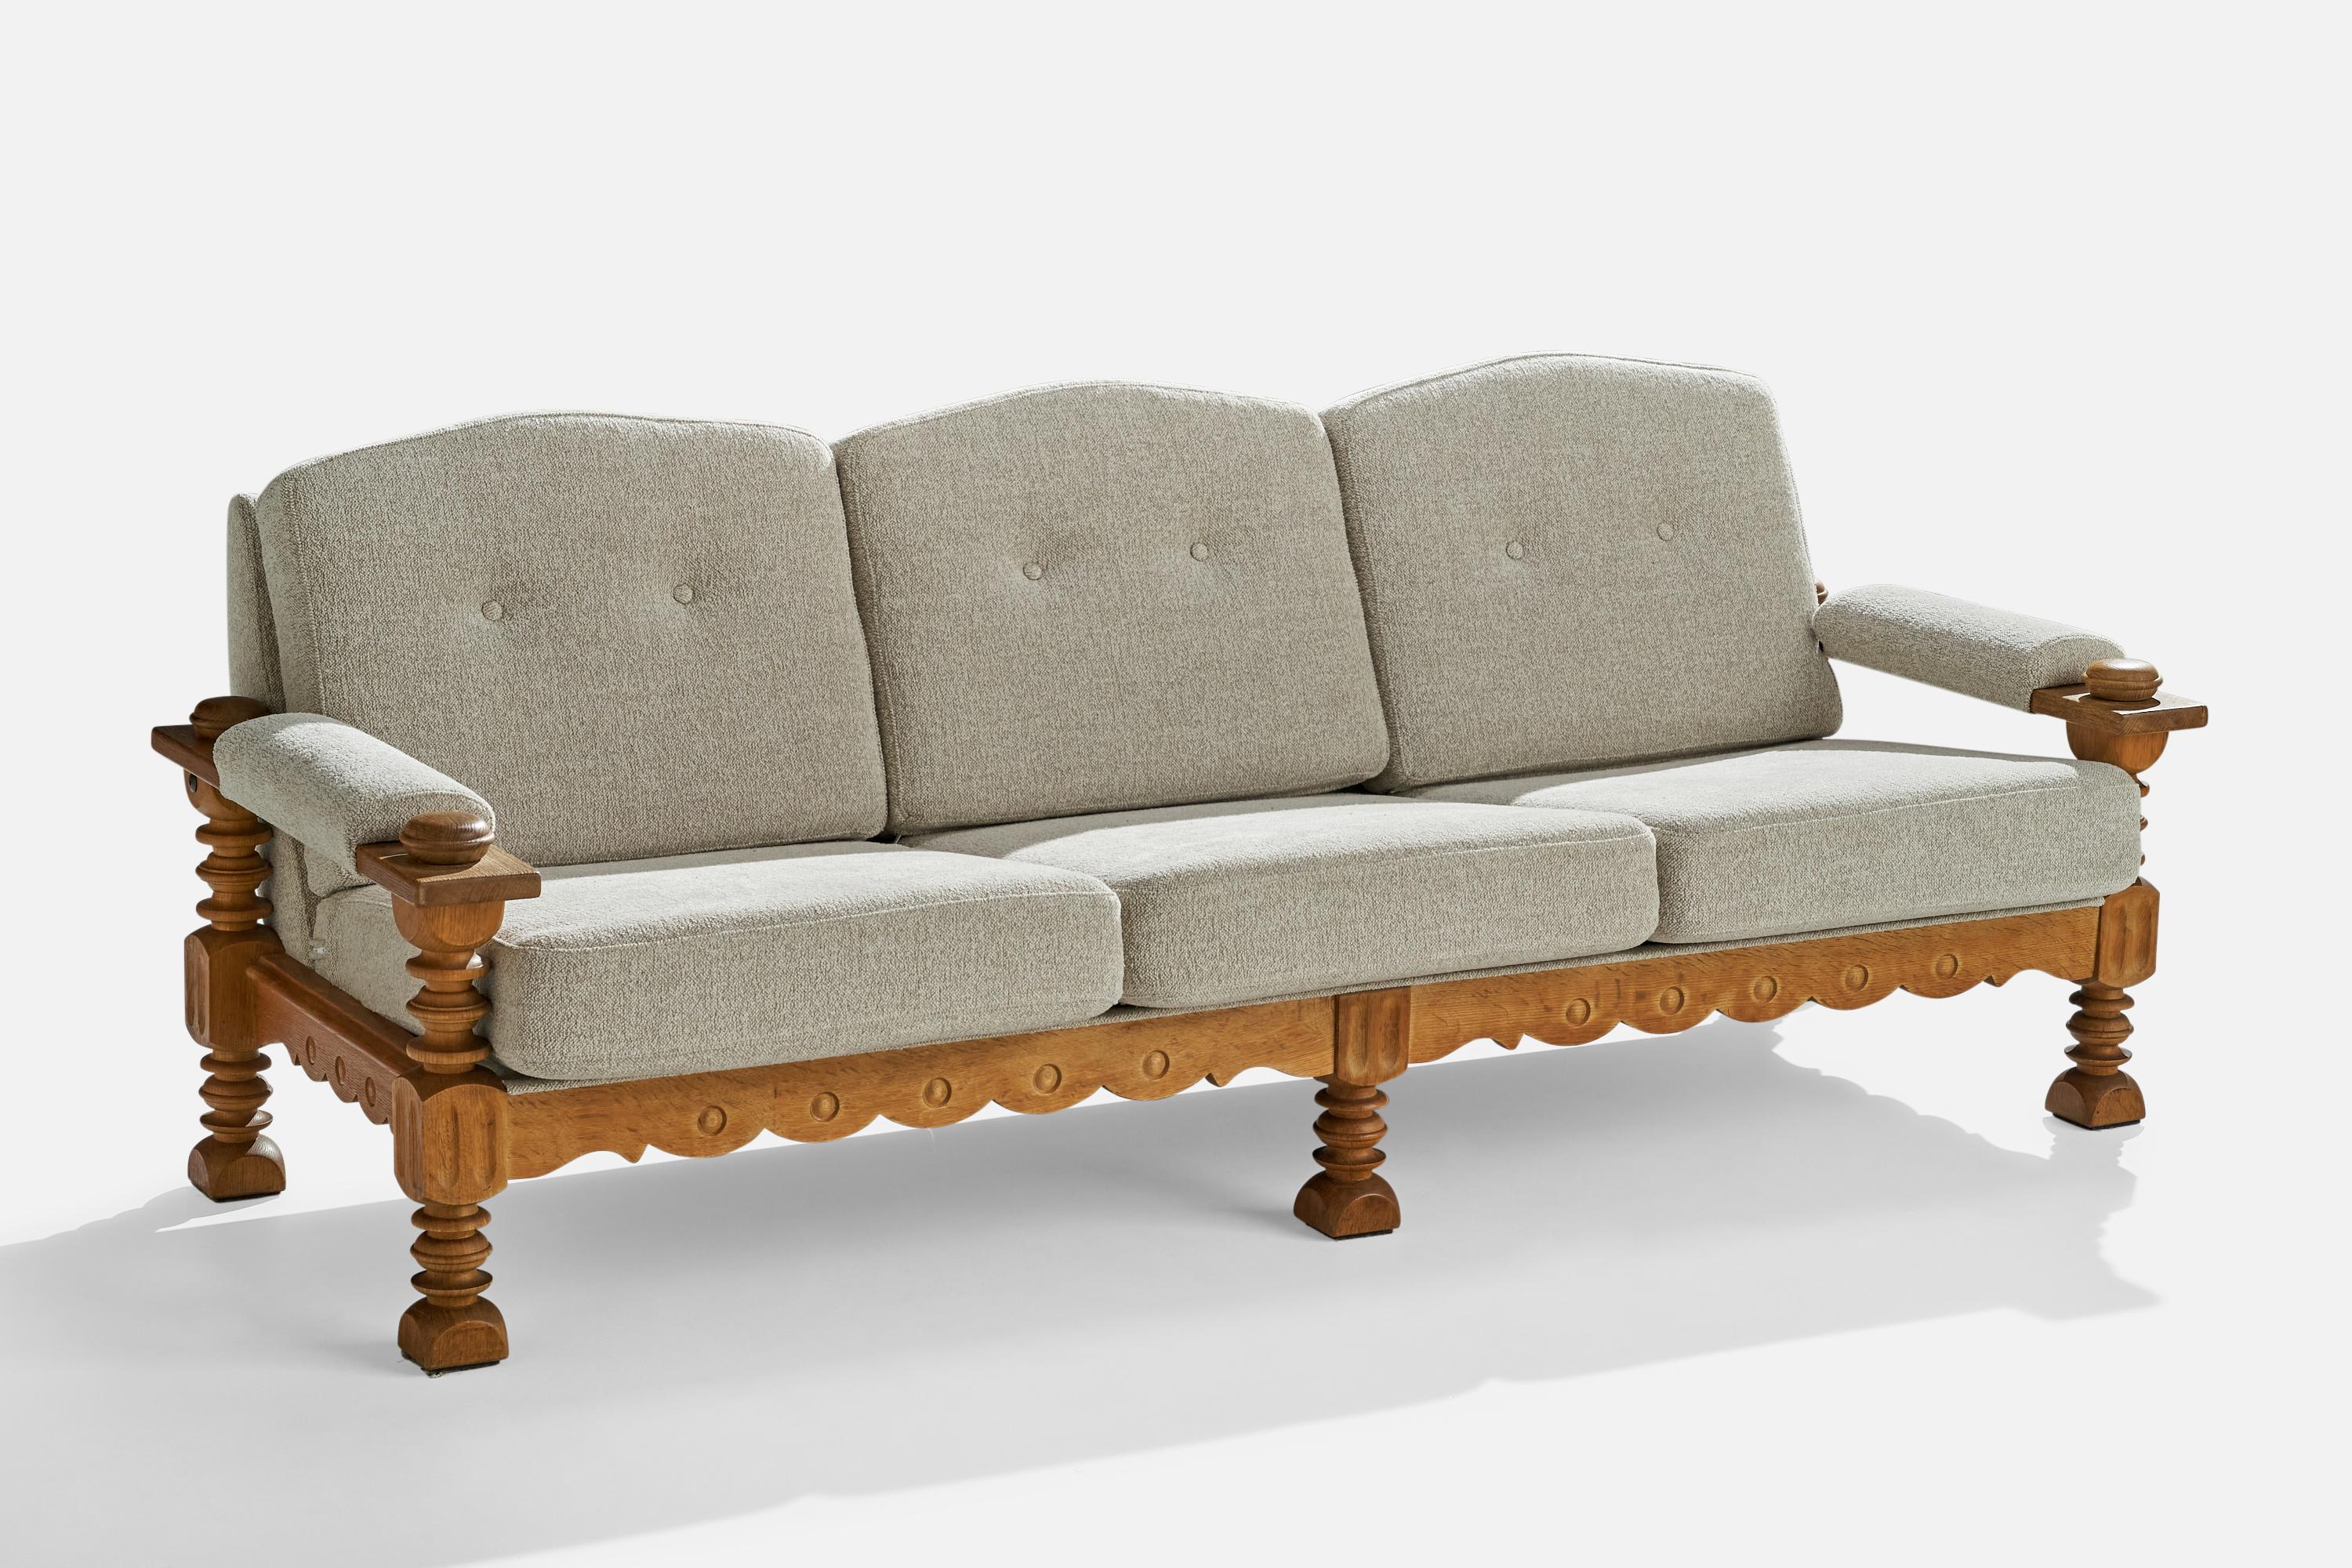 Sofa aus geschnitzter Eiche und hellgrauem Stoff, entworfen und hergestellt in Dänemark, ca. 1960er Jahre.

Sitzhöhe 16,5